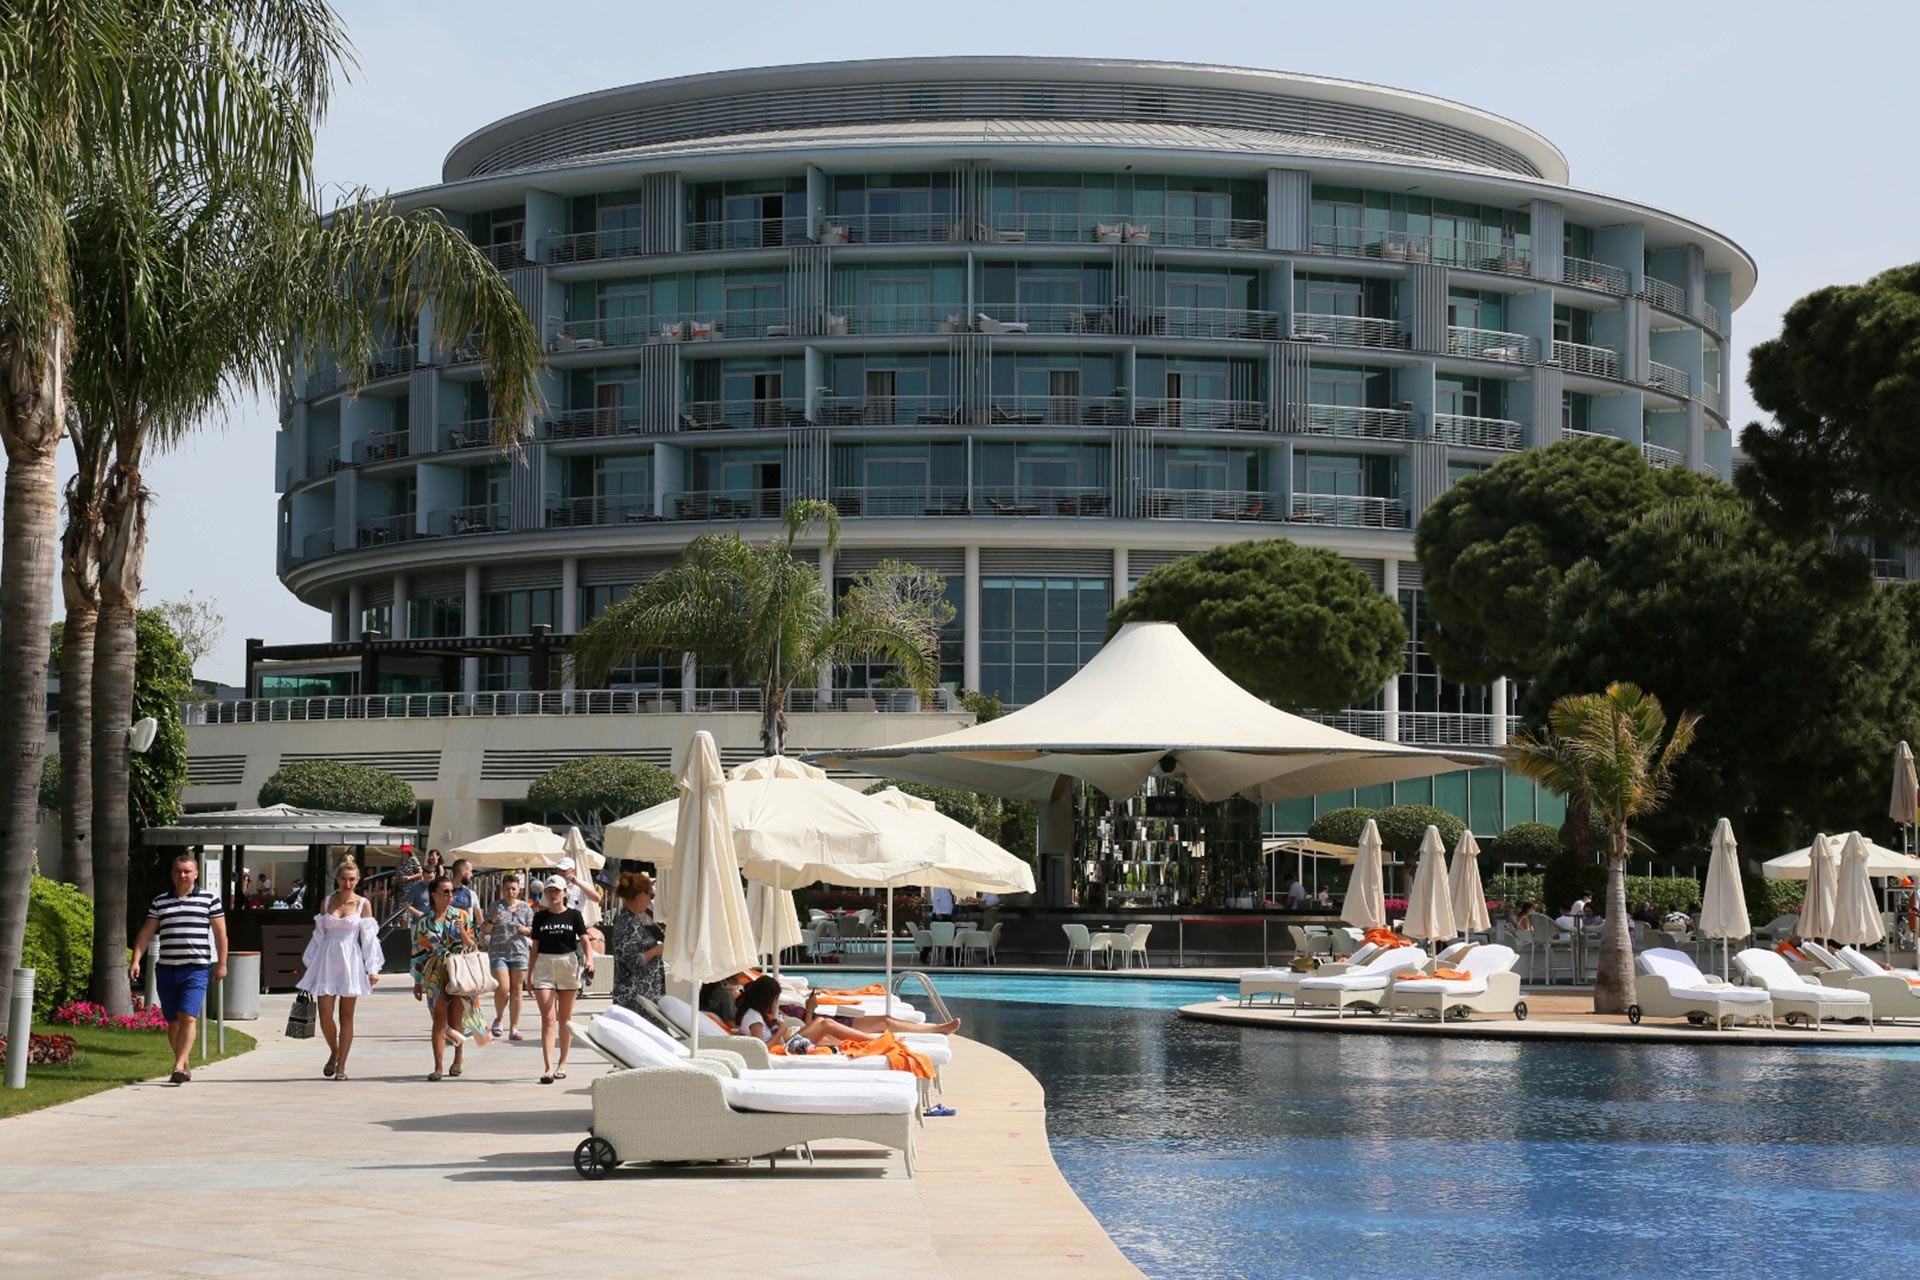 Otel binası, havuz (sağda) ve otelde kalan turistler (solda)